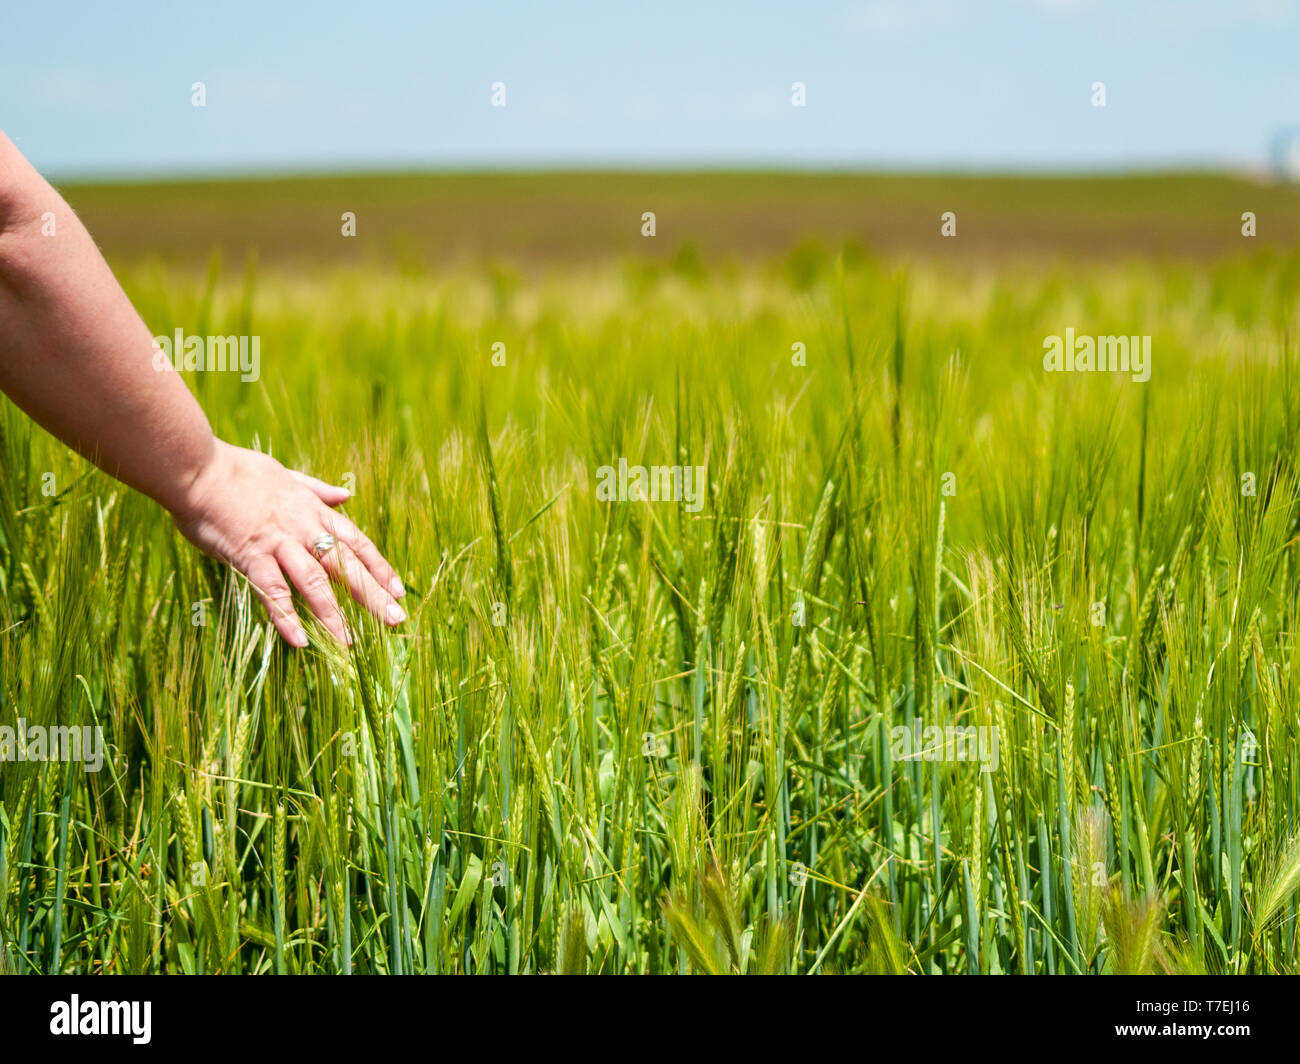 Persona irreconocible jugando con su mano las plantas en un campo de cultivo de cebada de primavera Foto de stock